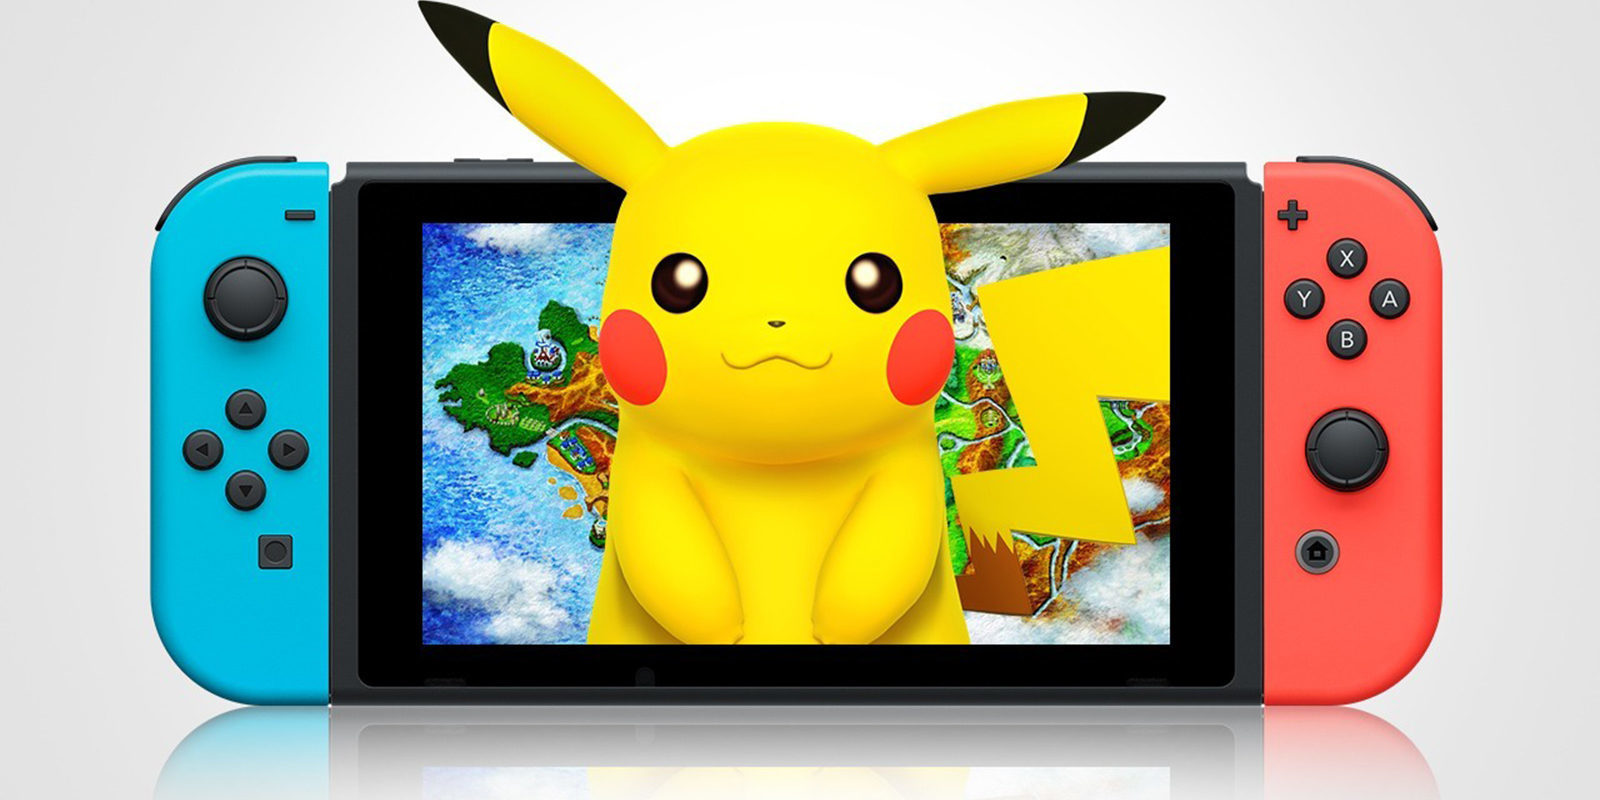 El 'Pokémon' de Nintendo Switch llegará en "2018 o más tarde"